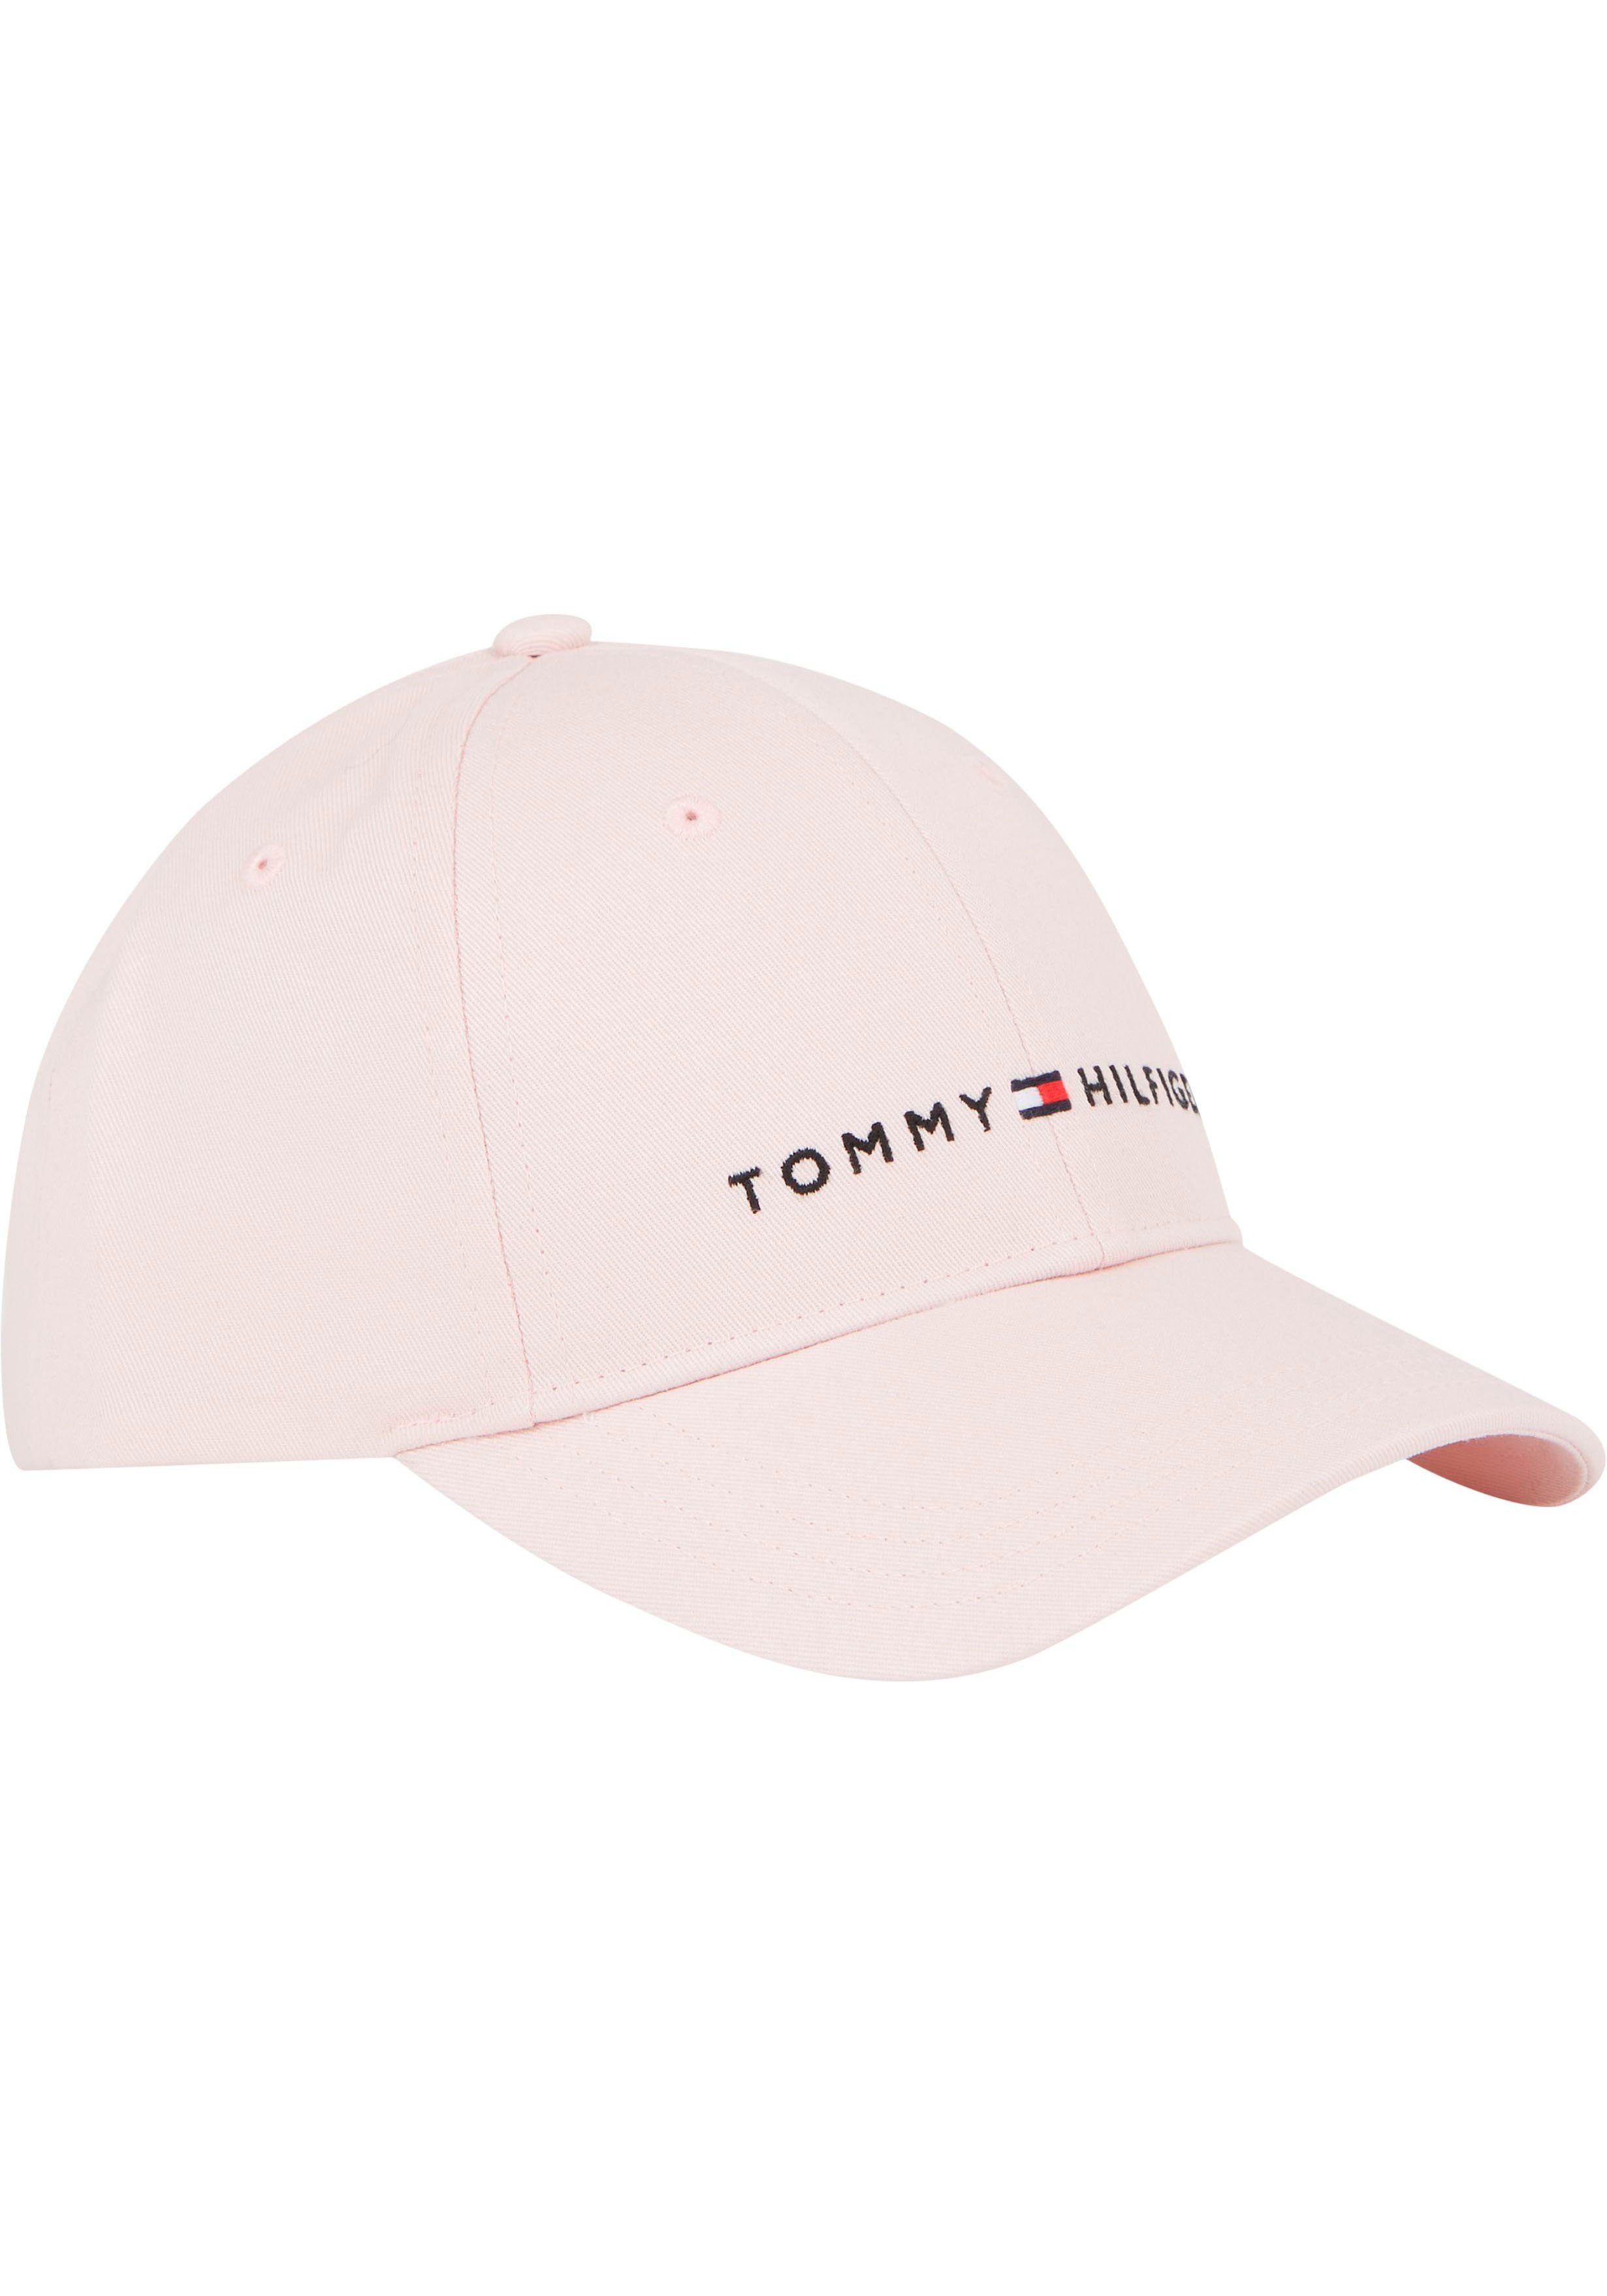 Tommy TH Logostickerei ESSENTIAL Kinder CAP Cap Junior MiniMe,mit Hilfiger Kids Fitted